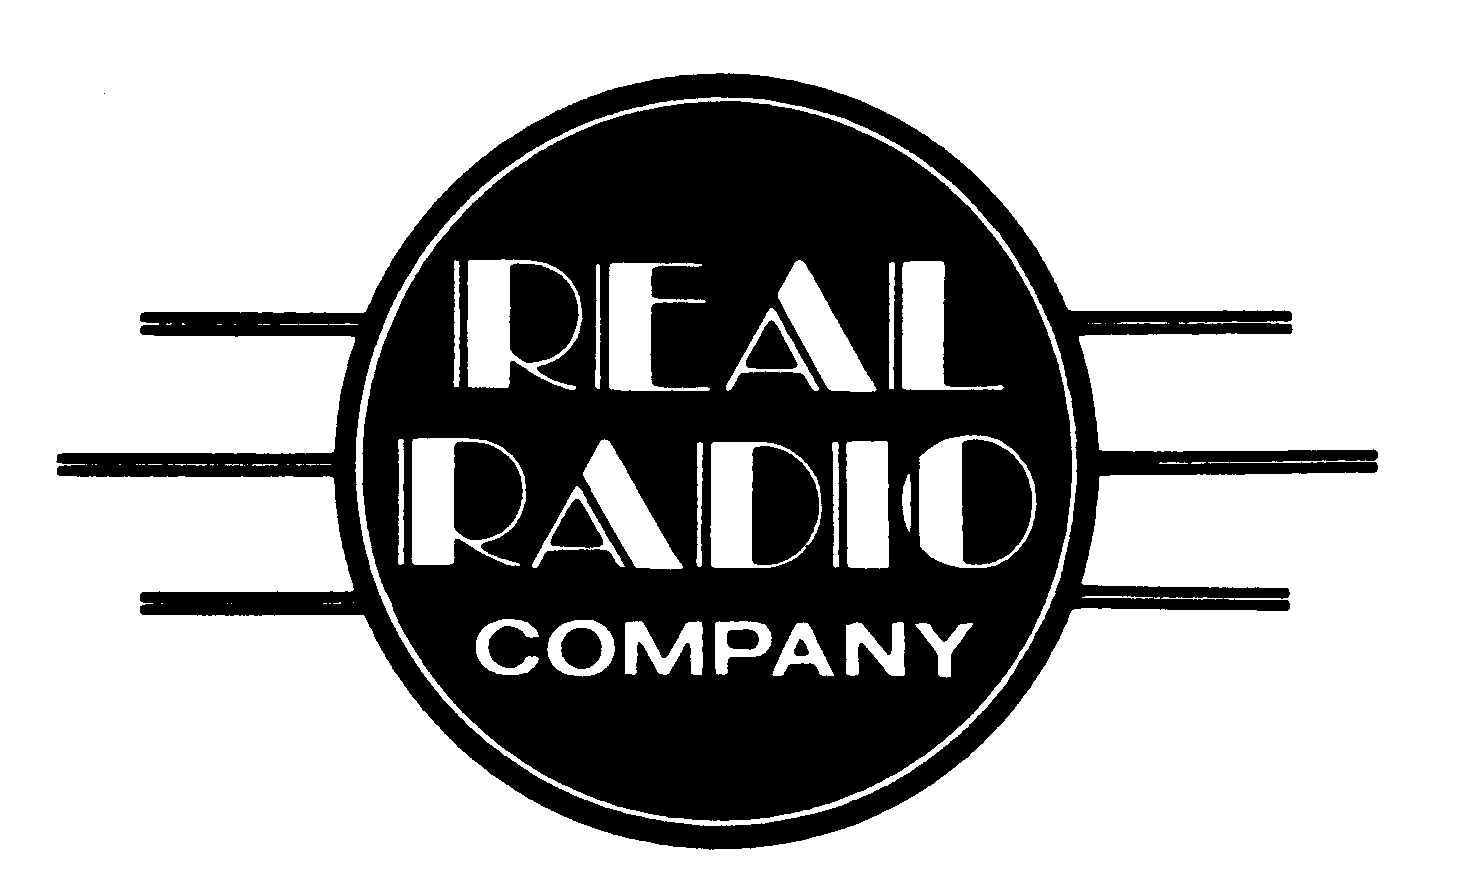  REAL RADIO COMPANY